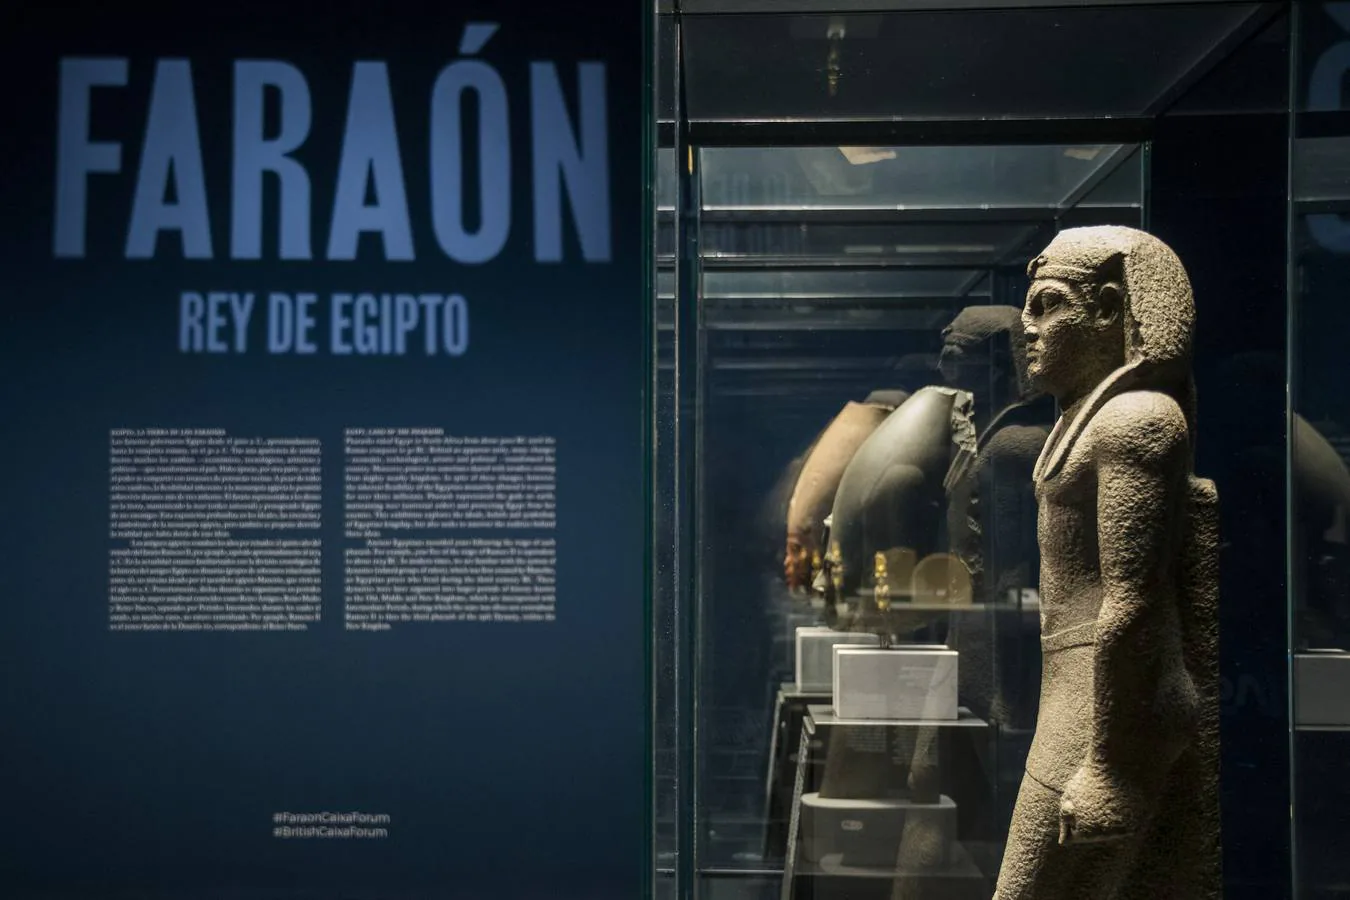 Los faraones del antiguo Egipto llegan a Sevilla